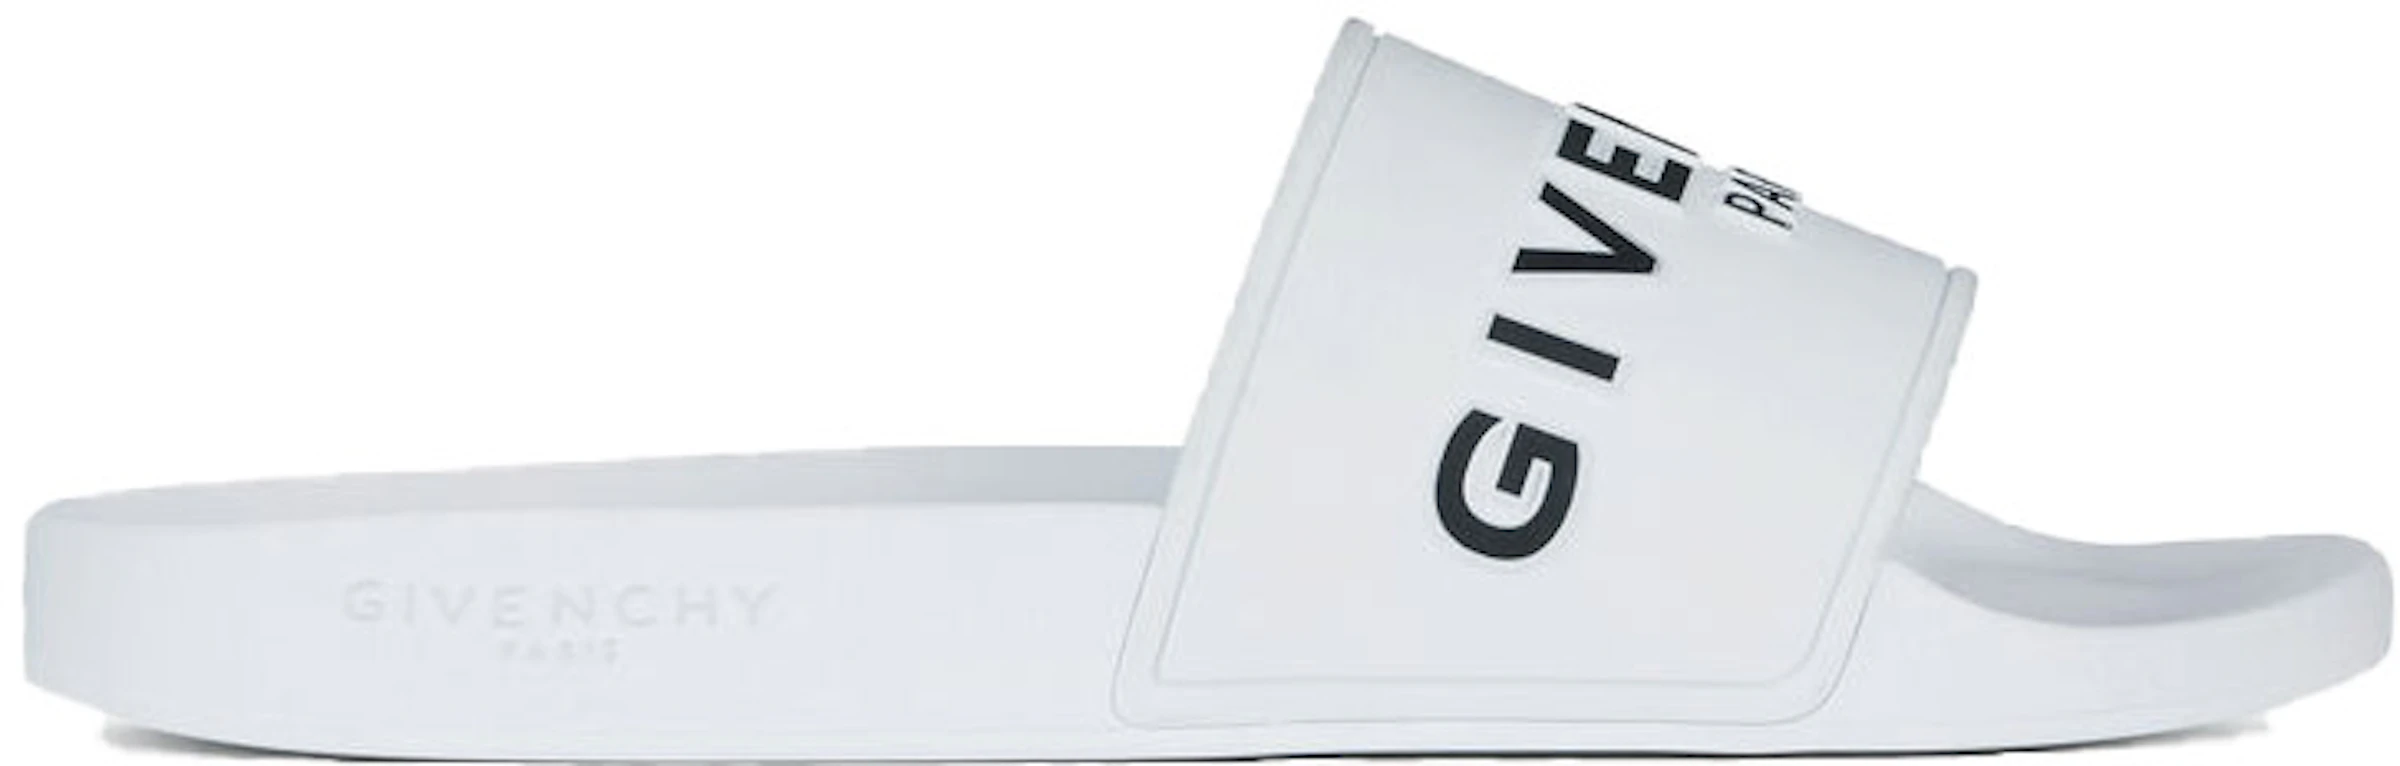 Givenchy Paris Flat Sandals White Black - BH300HH0EL-100 - US